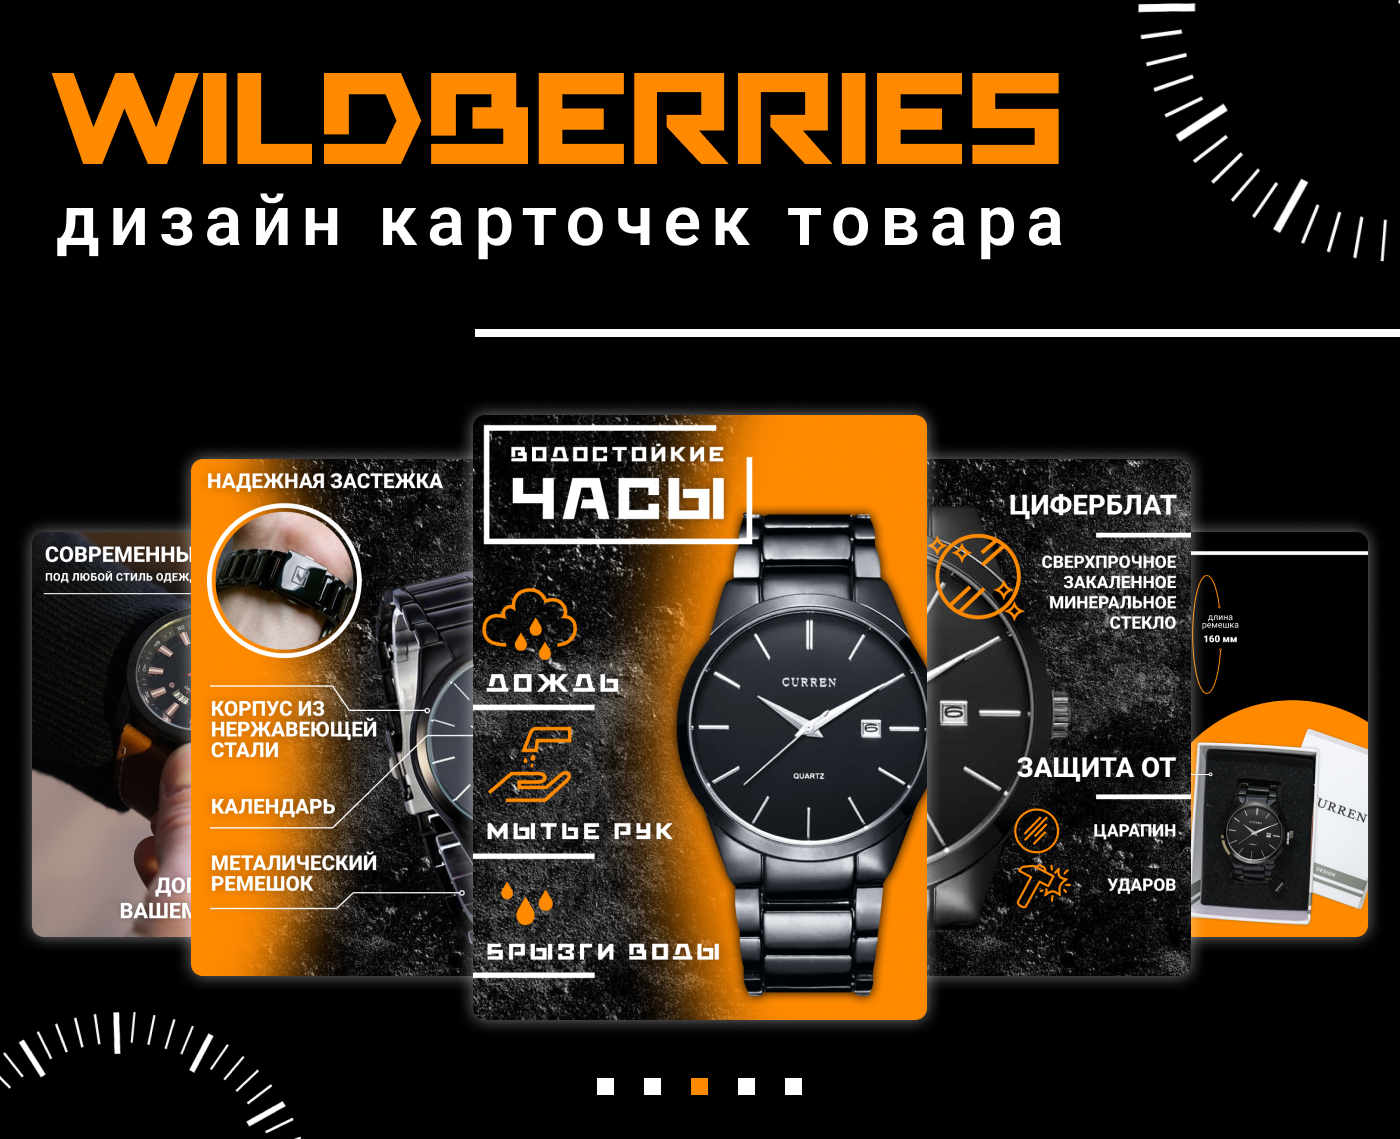 Инфографика Wildberries для карточек. Дизайн инфографики для Wildberries. Дизайн инфографика для маркетплейсов. Дизайн карточек товара для Wildberries. Маркетплейс часы